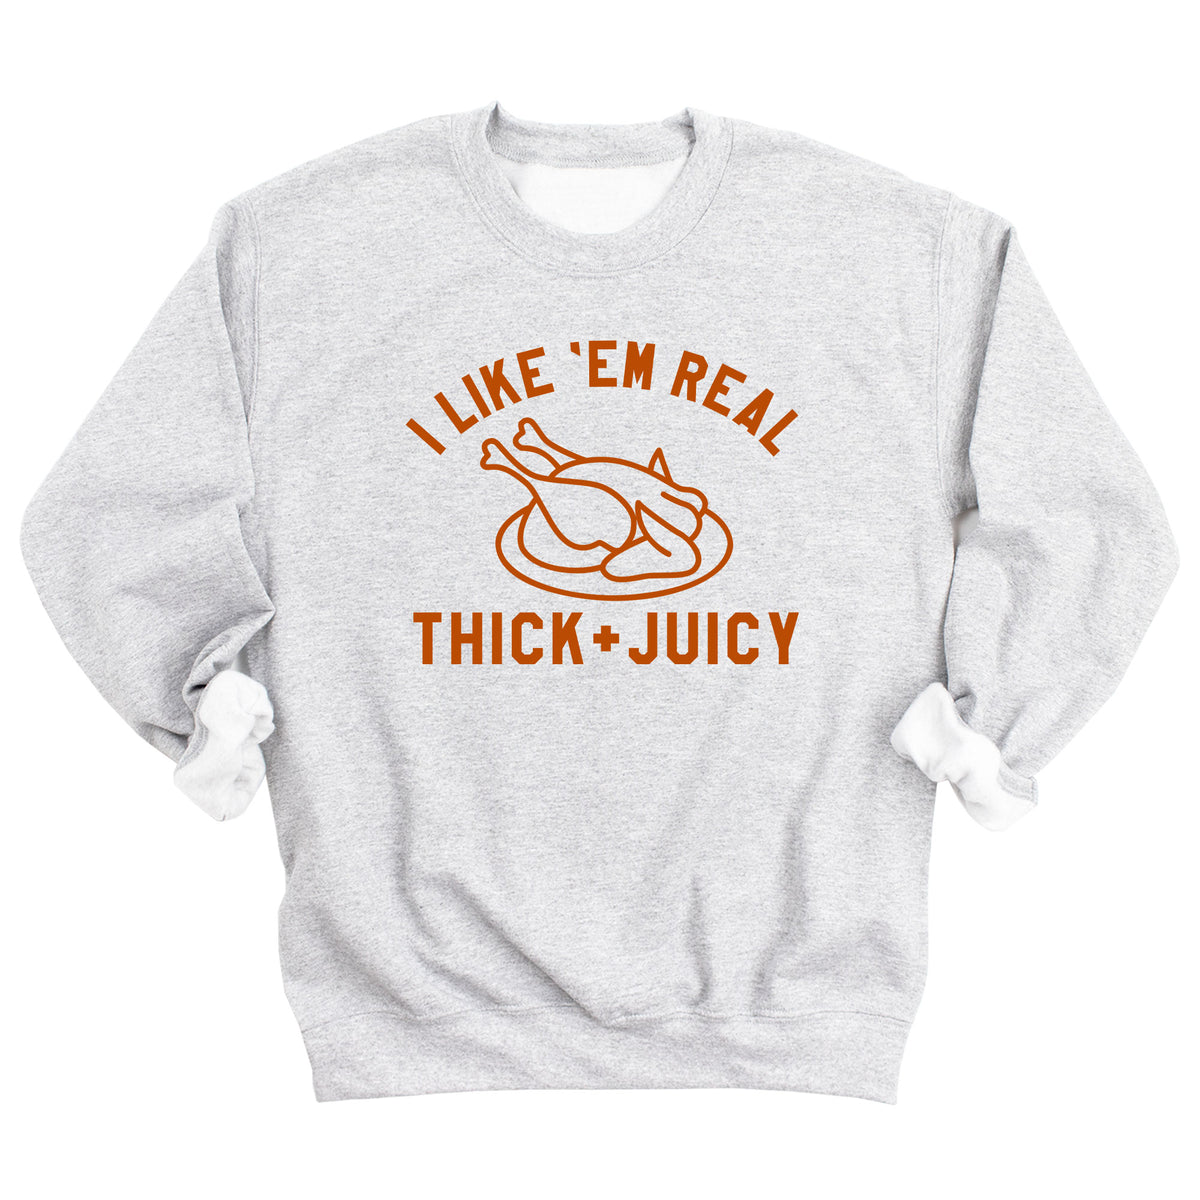 I Like 'Em Real Thick & Juicy Sweatshirt